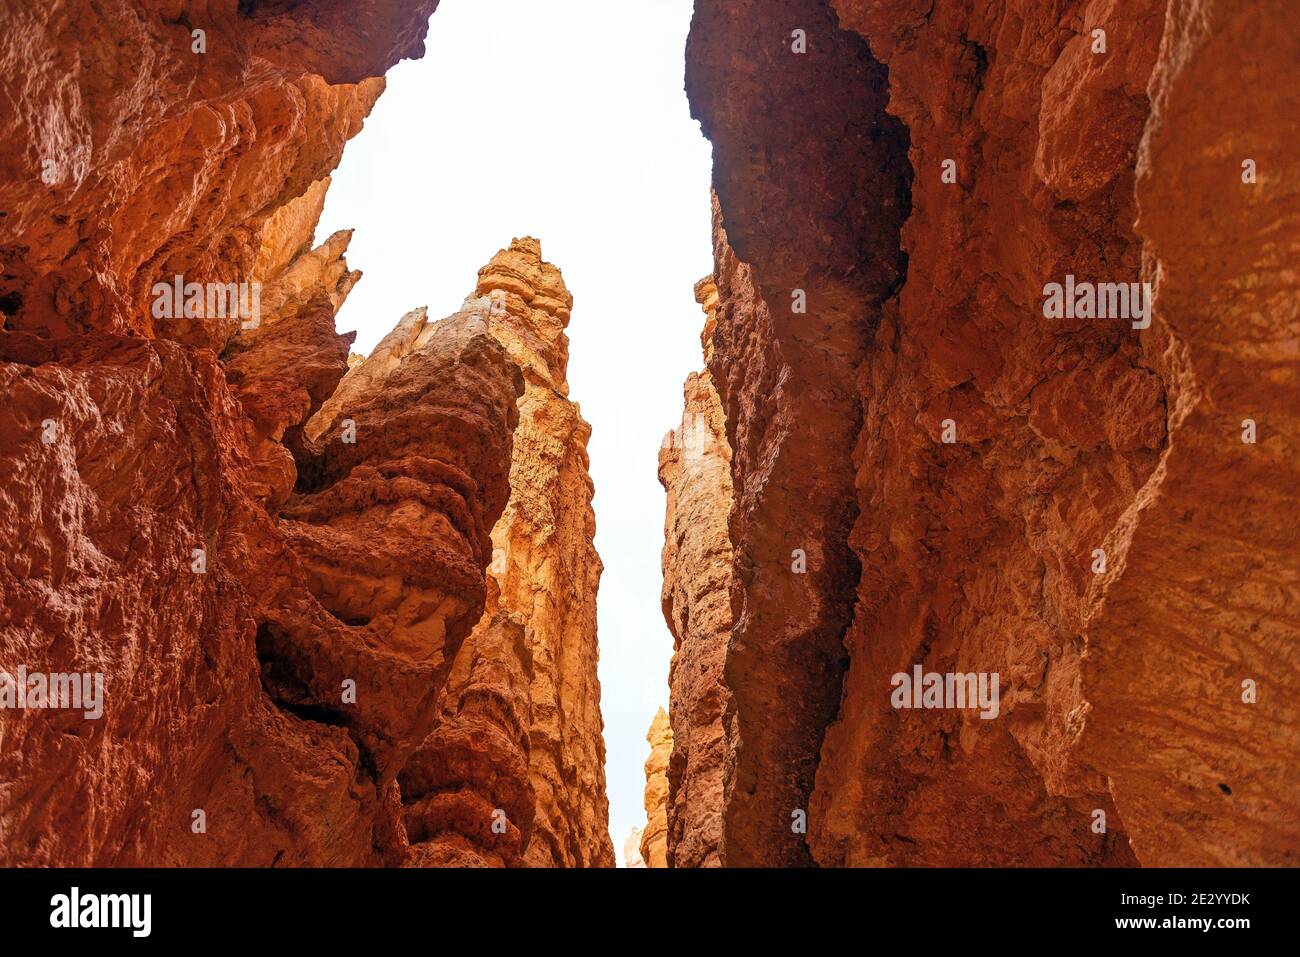 Formation de roches de grès Hoodoo, Bryce Canyon, Utah, États-Unis (États-Unis d'Amérique). Banque D'Images